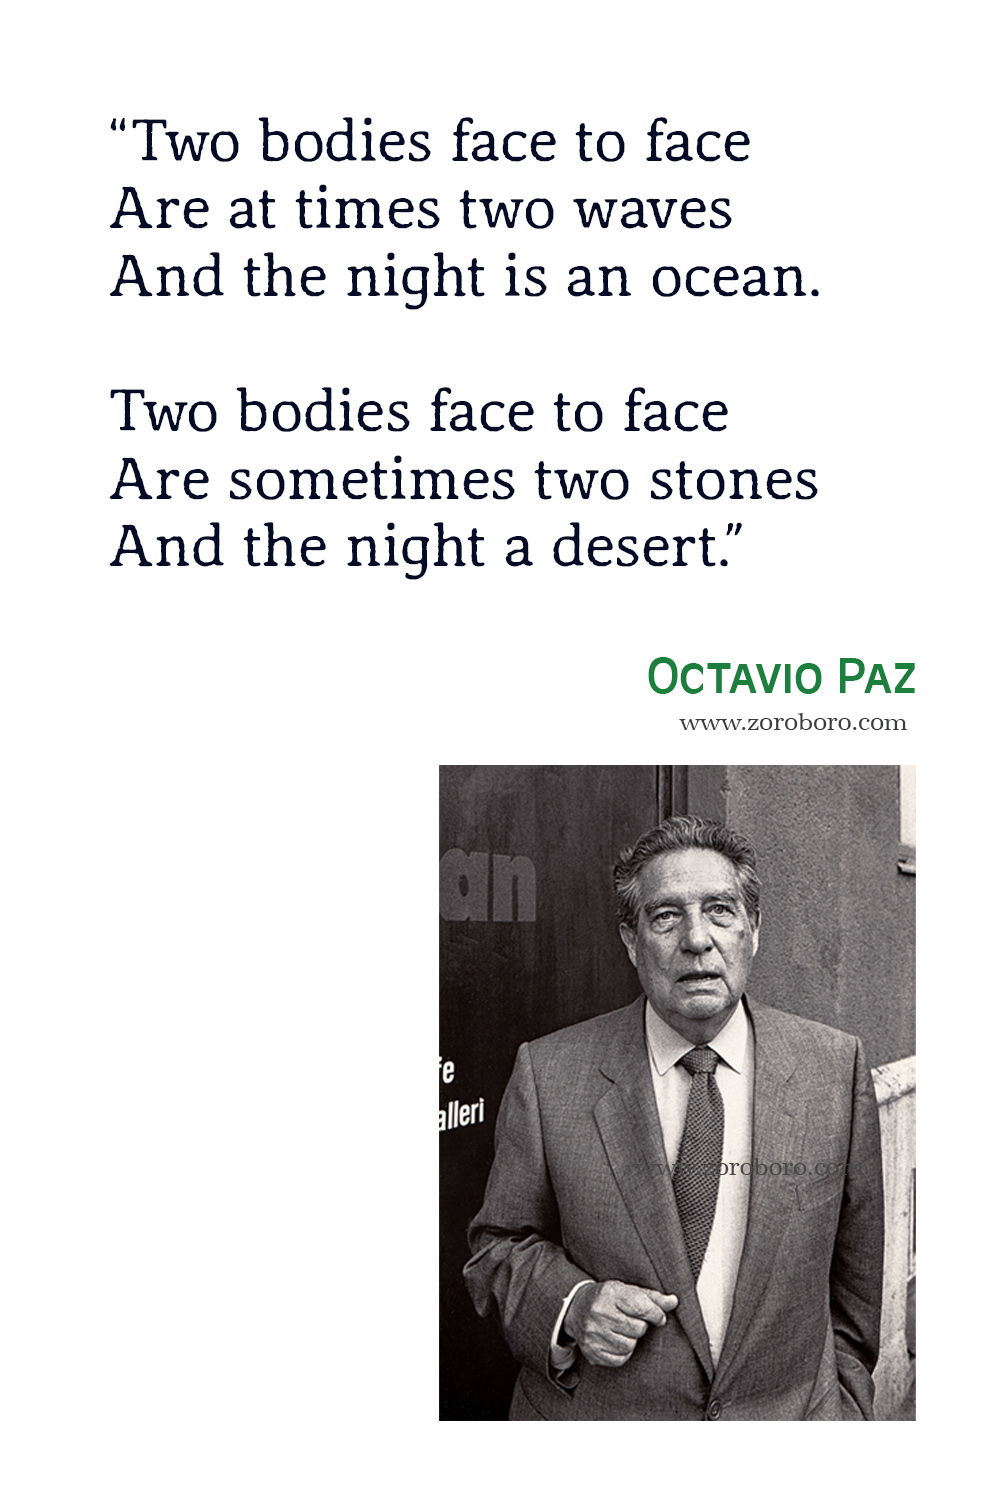 Octavio Paz Quotes, Octavio Paz Poemas, Octavio Paz Poems, Octavio Paz Poetry, Octavio Paz Books Quotes, Octavio Paz.